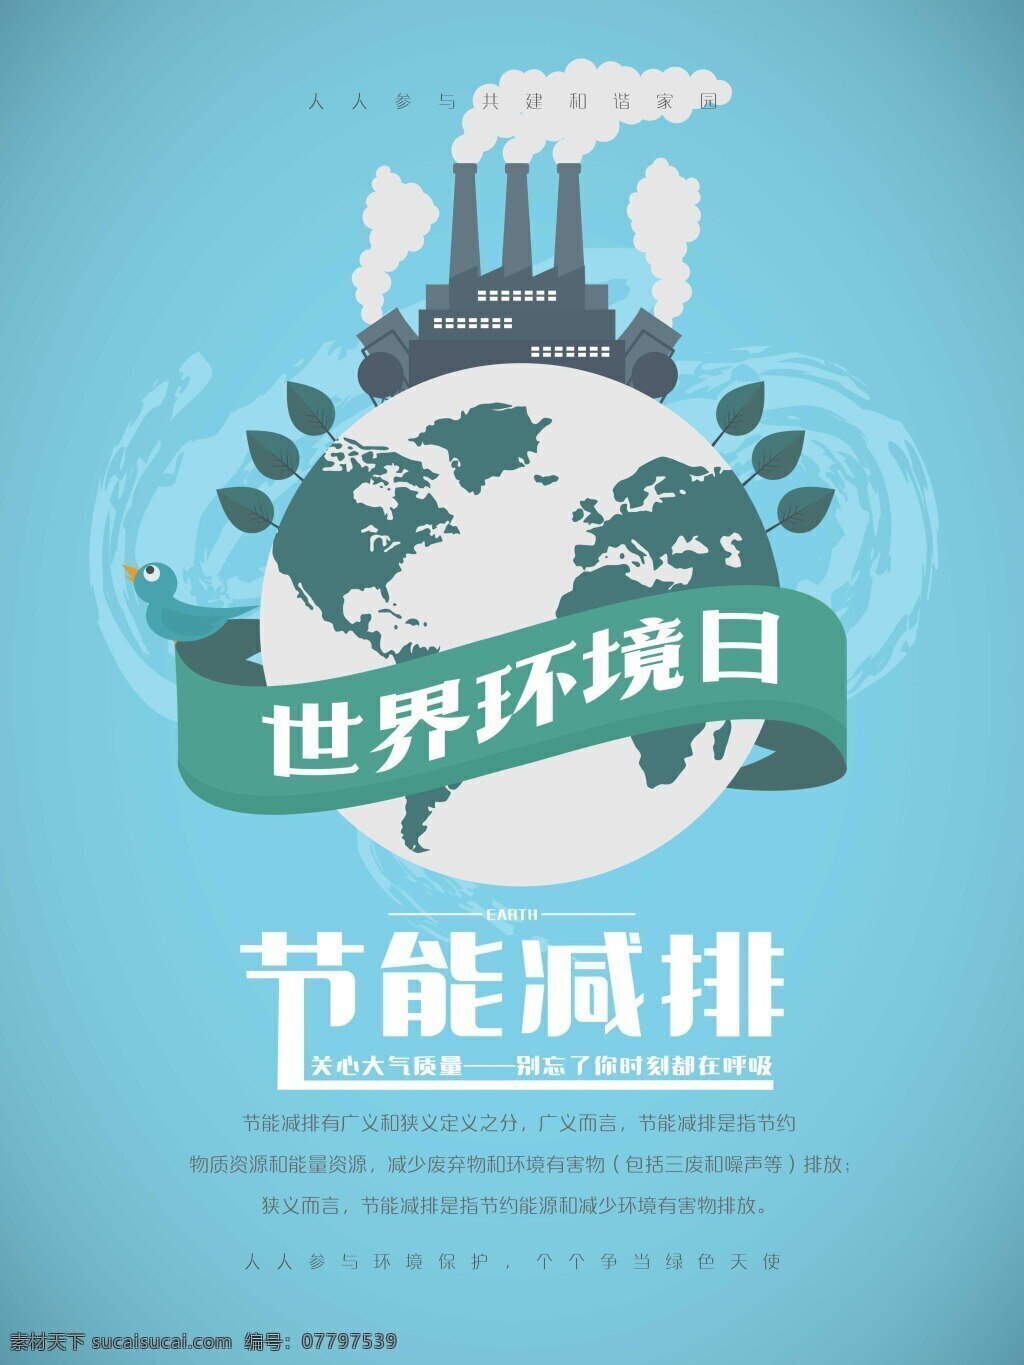 节能 减排 世界环境日 环保 宣传海报 保护环境 爱护环境 公益 创意 文明出行 节能低碳 保护地球 地球日 世界地球日 环保展板 环境保护 保护环境主题